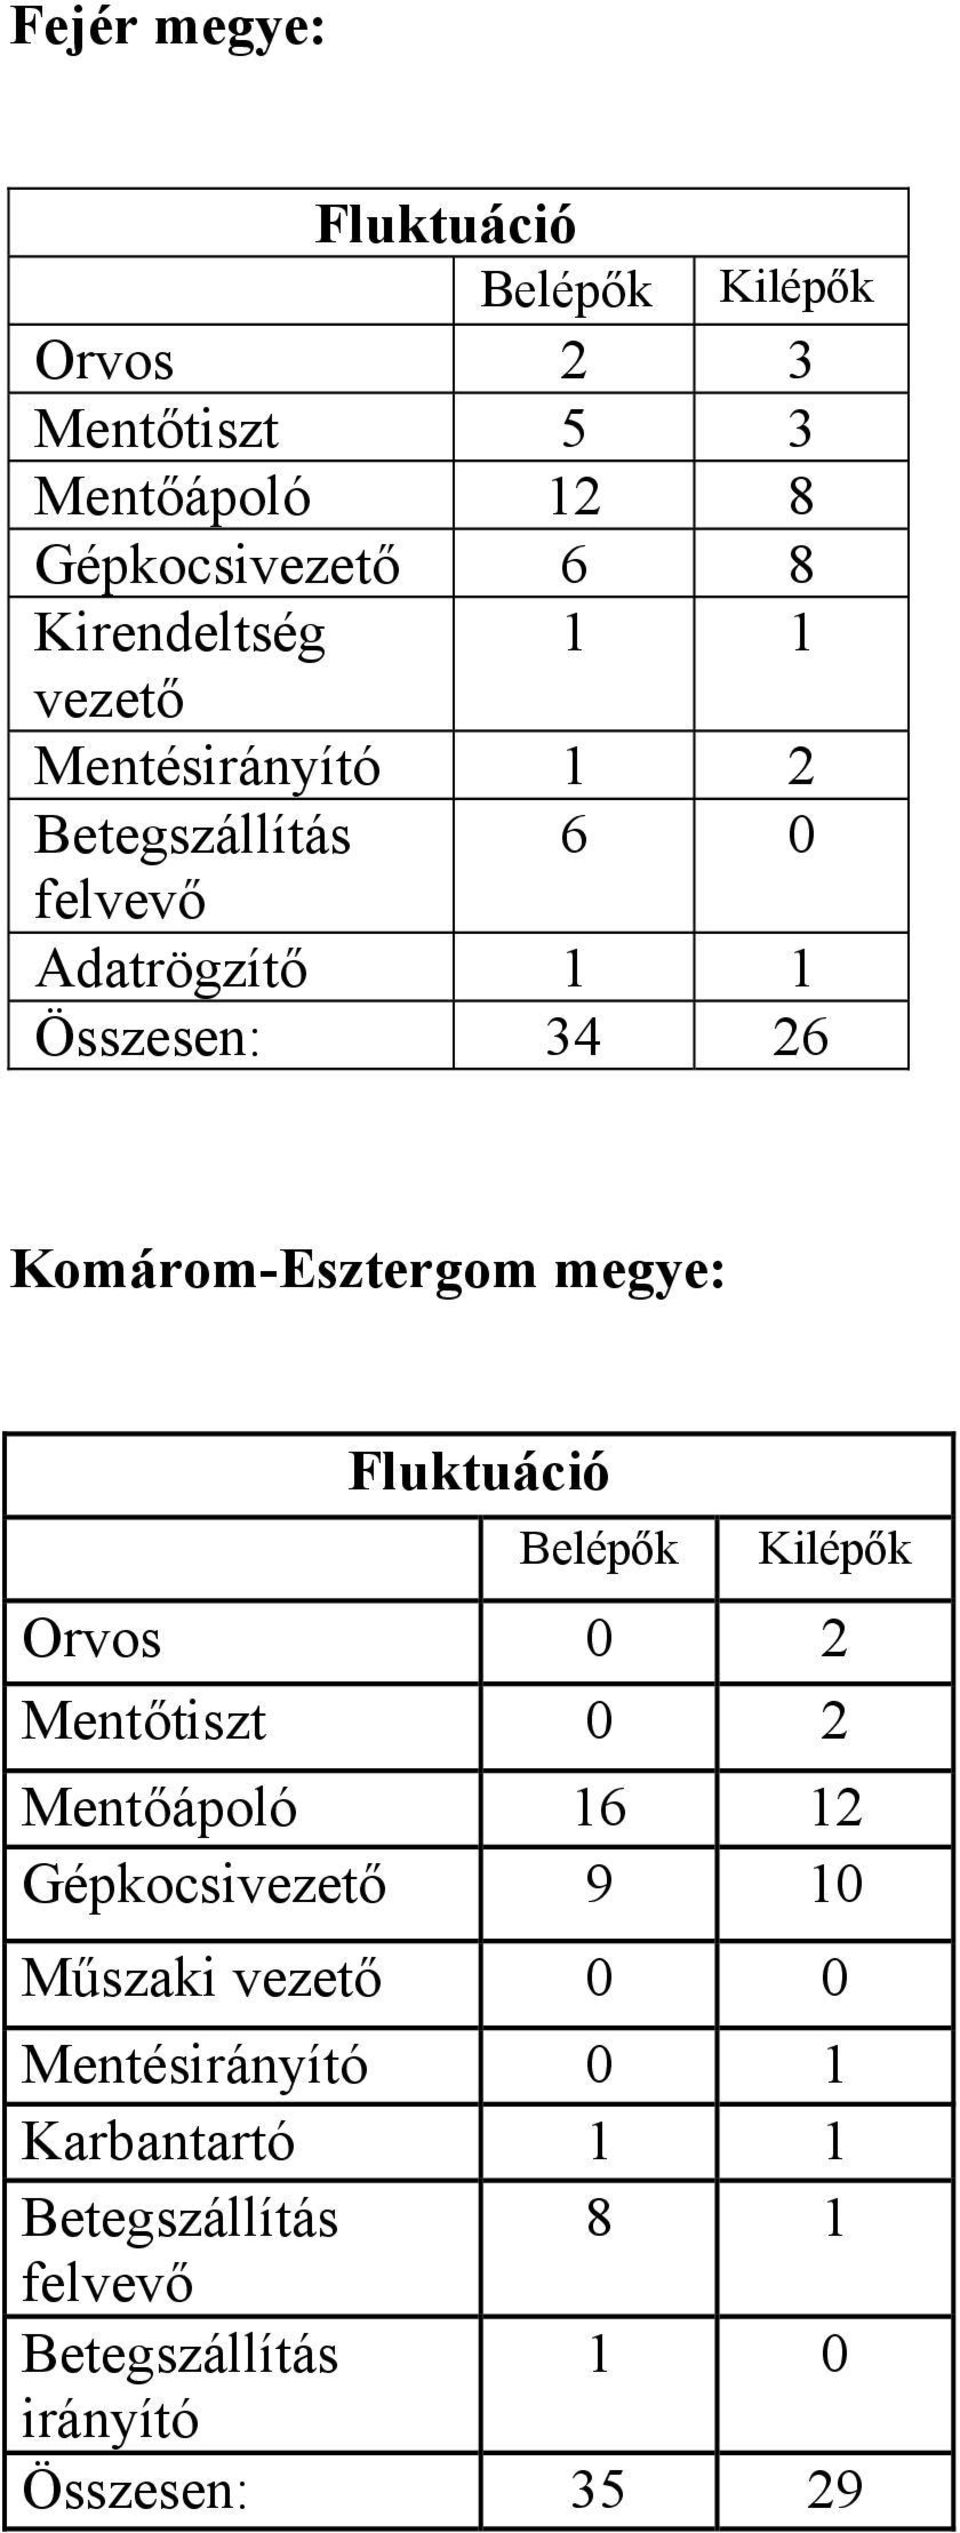 Komárom-Esztergom megye: Fluktuáció Belépők Kilépők Orvos 0 2 Mentőtiszt 0 2 Mentőápoló 16 12 Gépkocsivezető